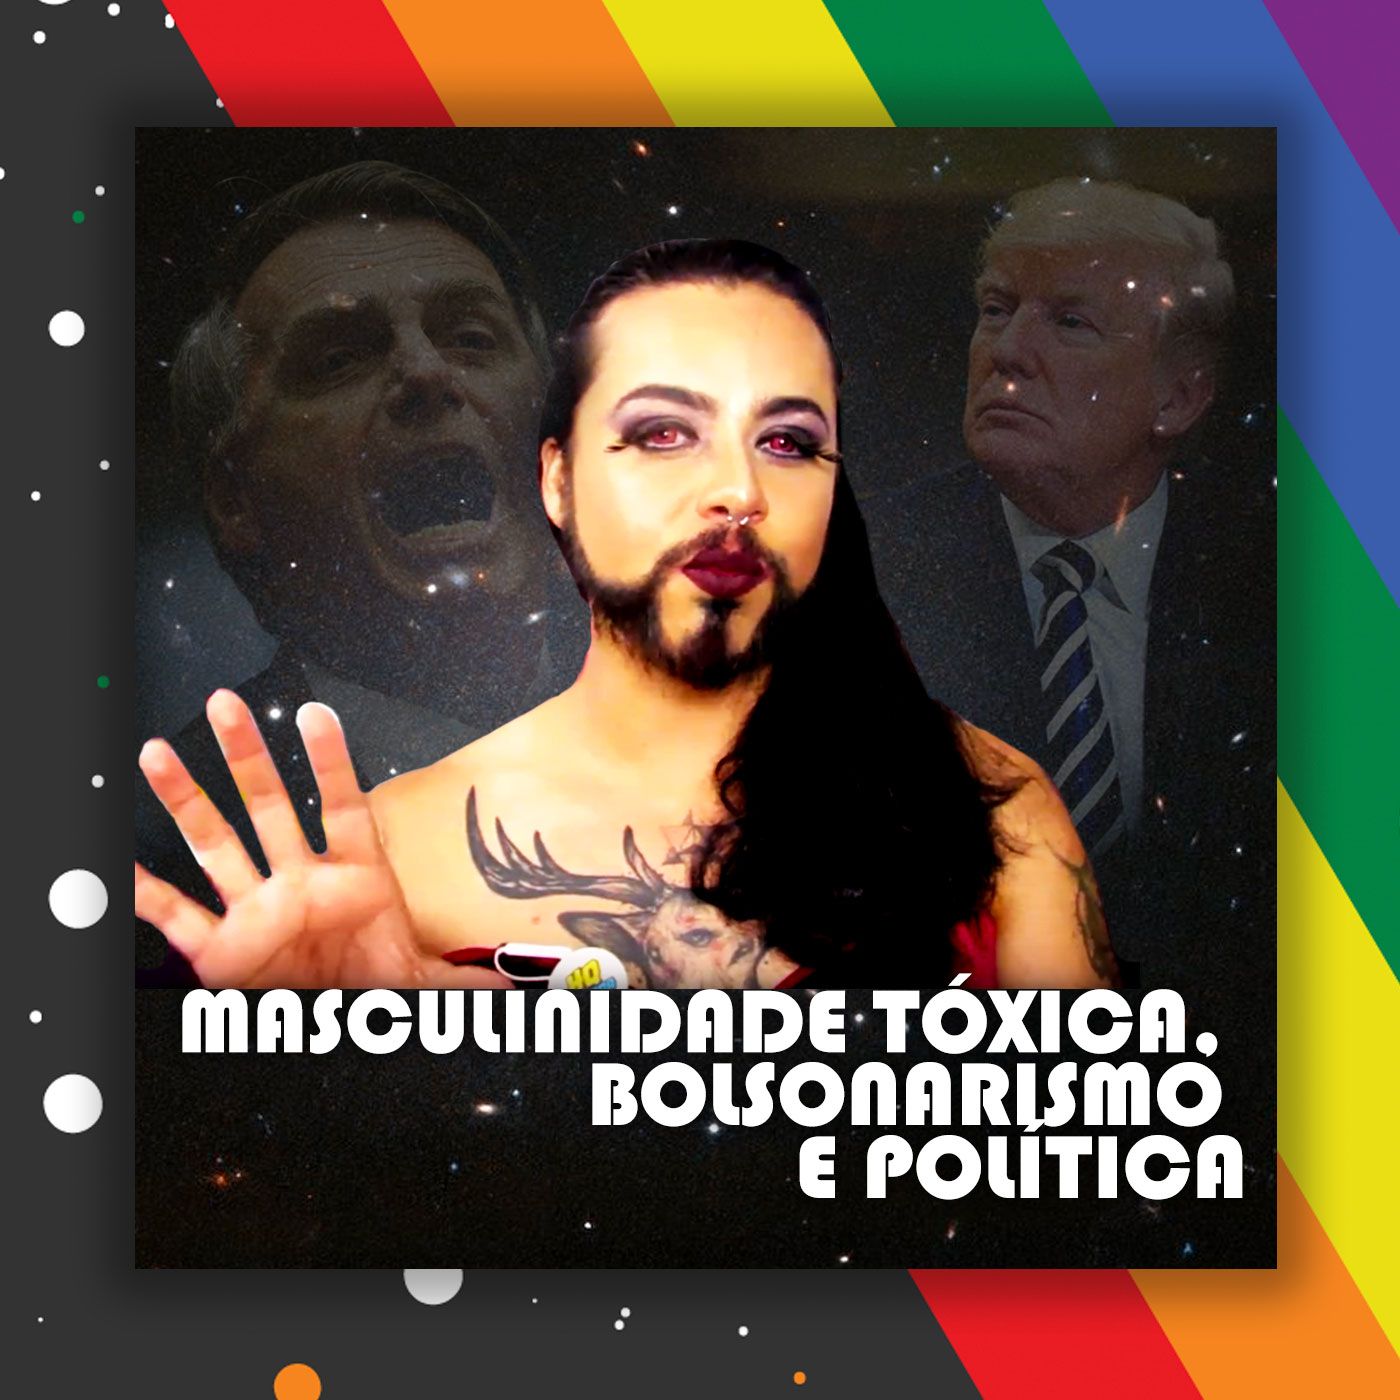 Masculinidade Tóxica, Juventude, Bolsonarismo e Política - Parte 02